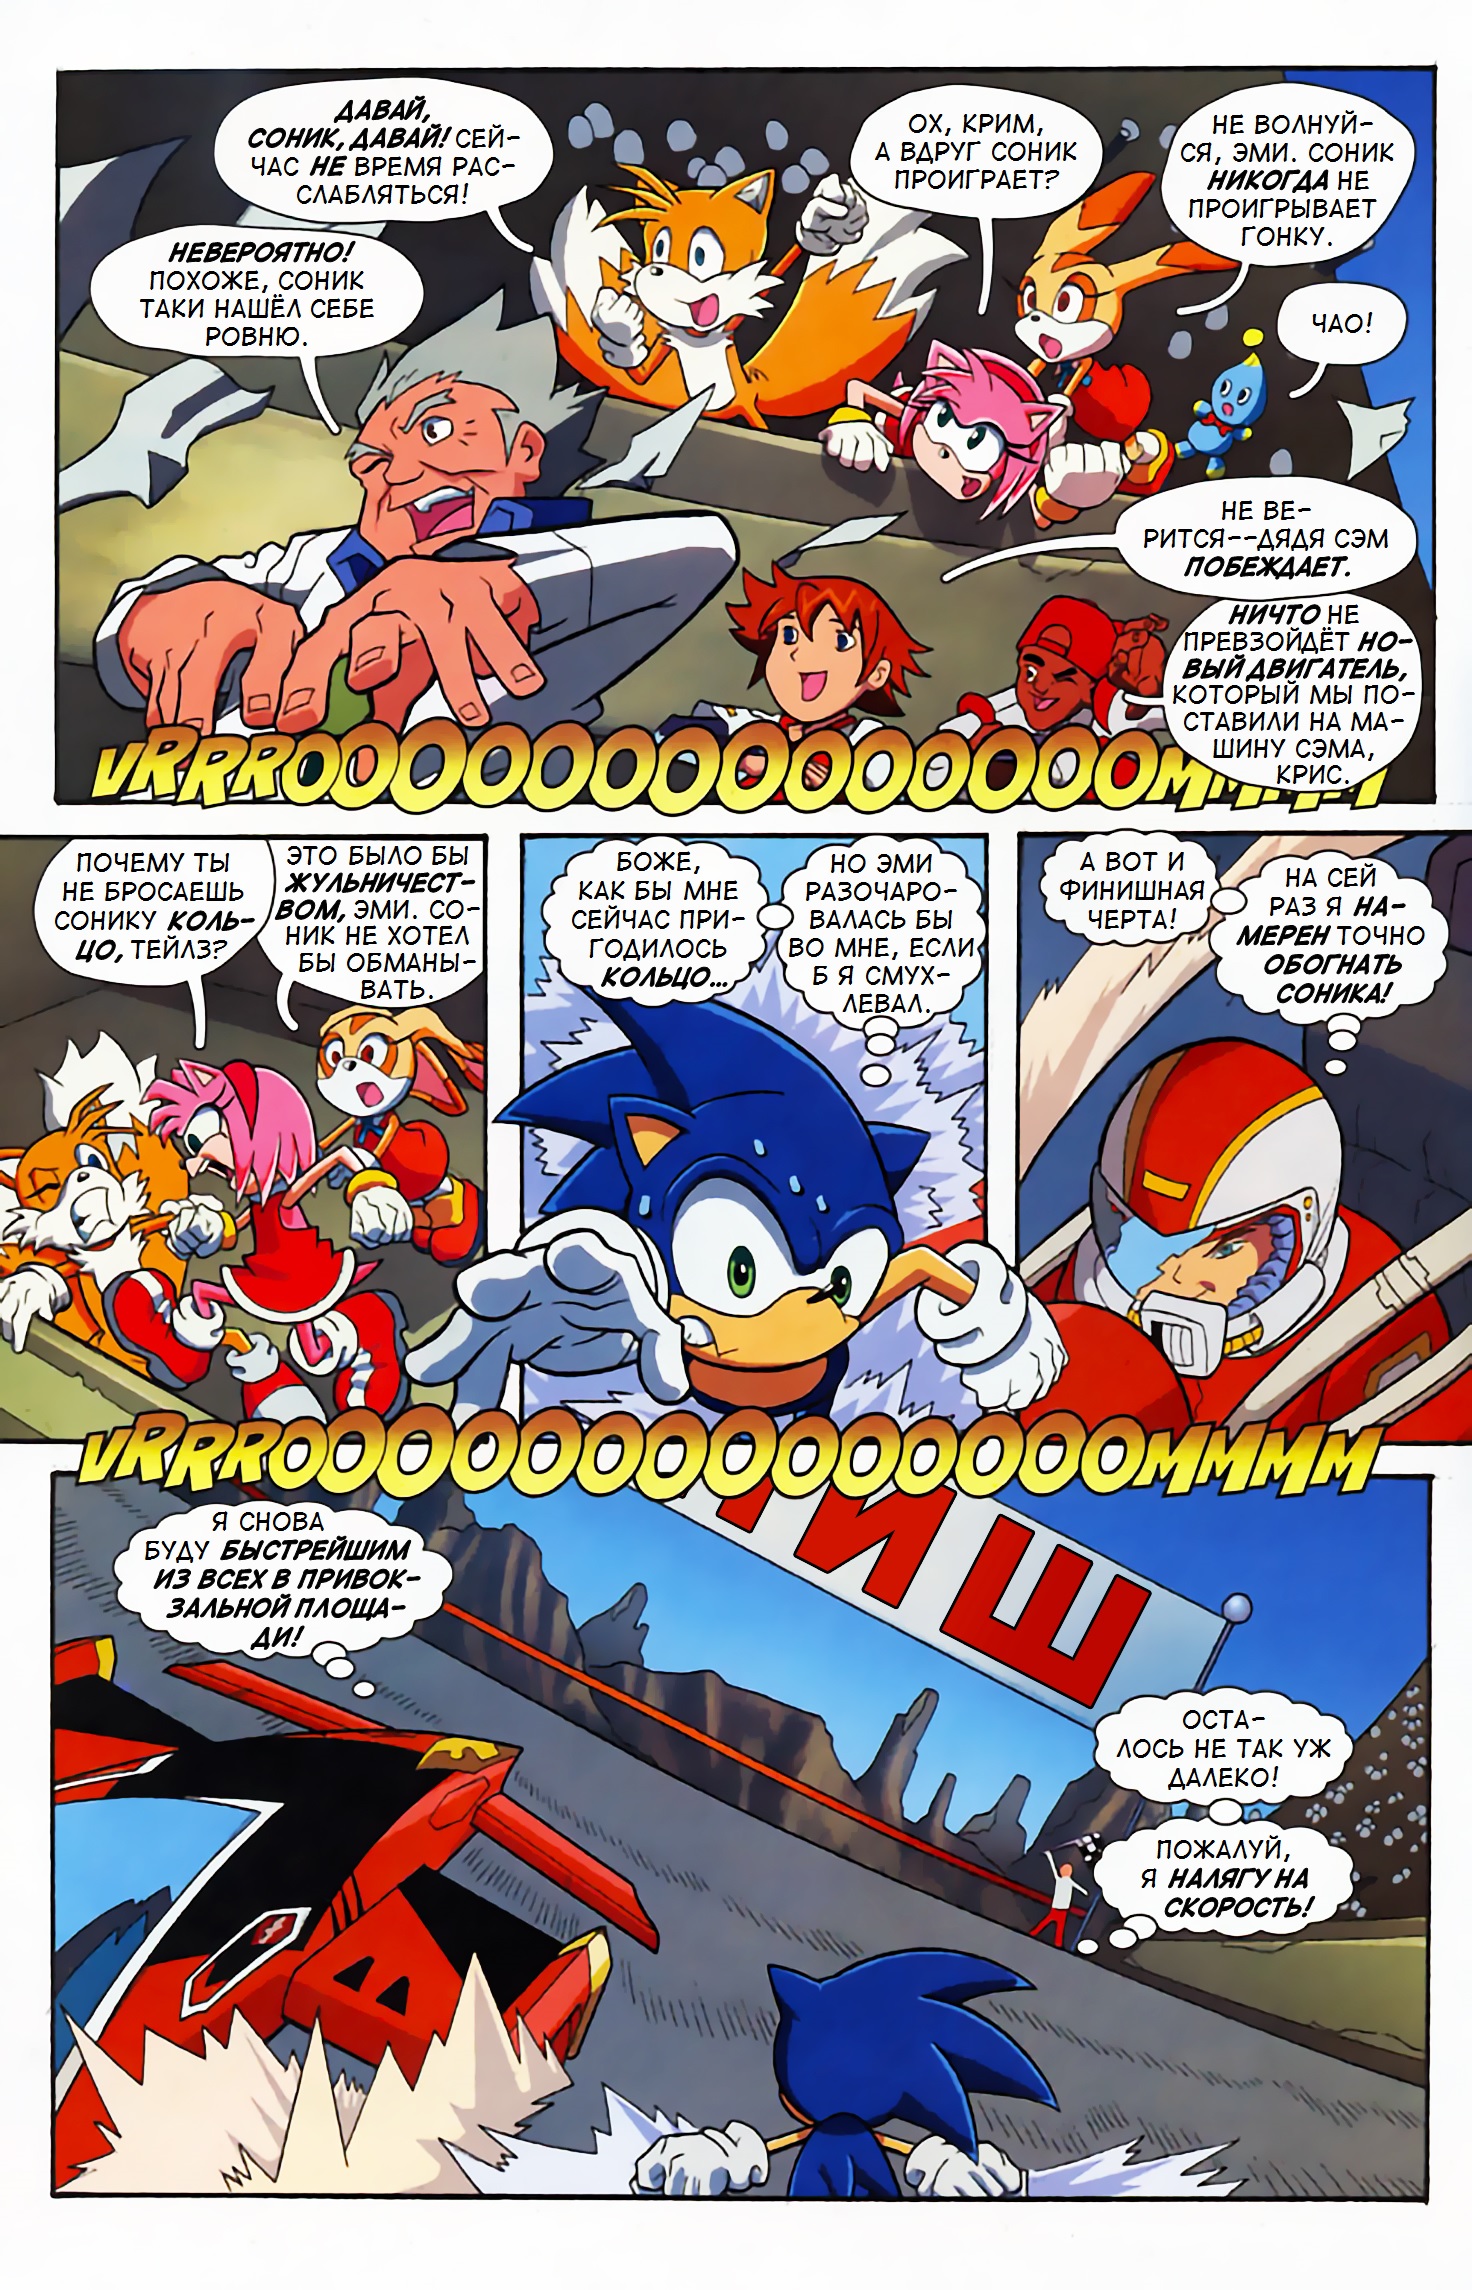 Читать соник комикс том. Комикс про Соника 1. Sonic комикс том 1. Комикс про Соника том 1. Соник комиксы Арчи.